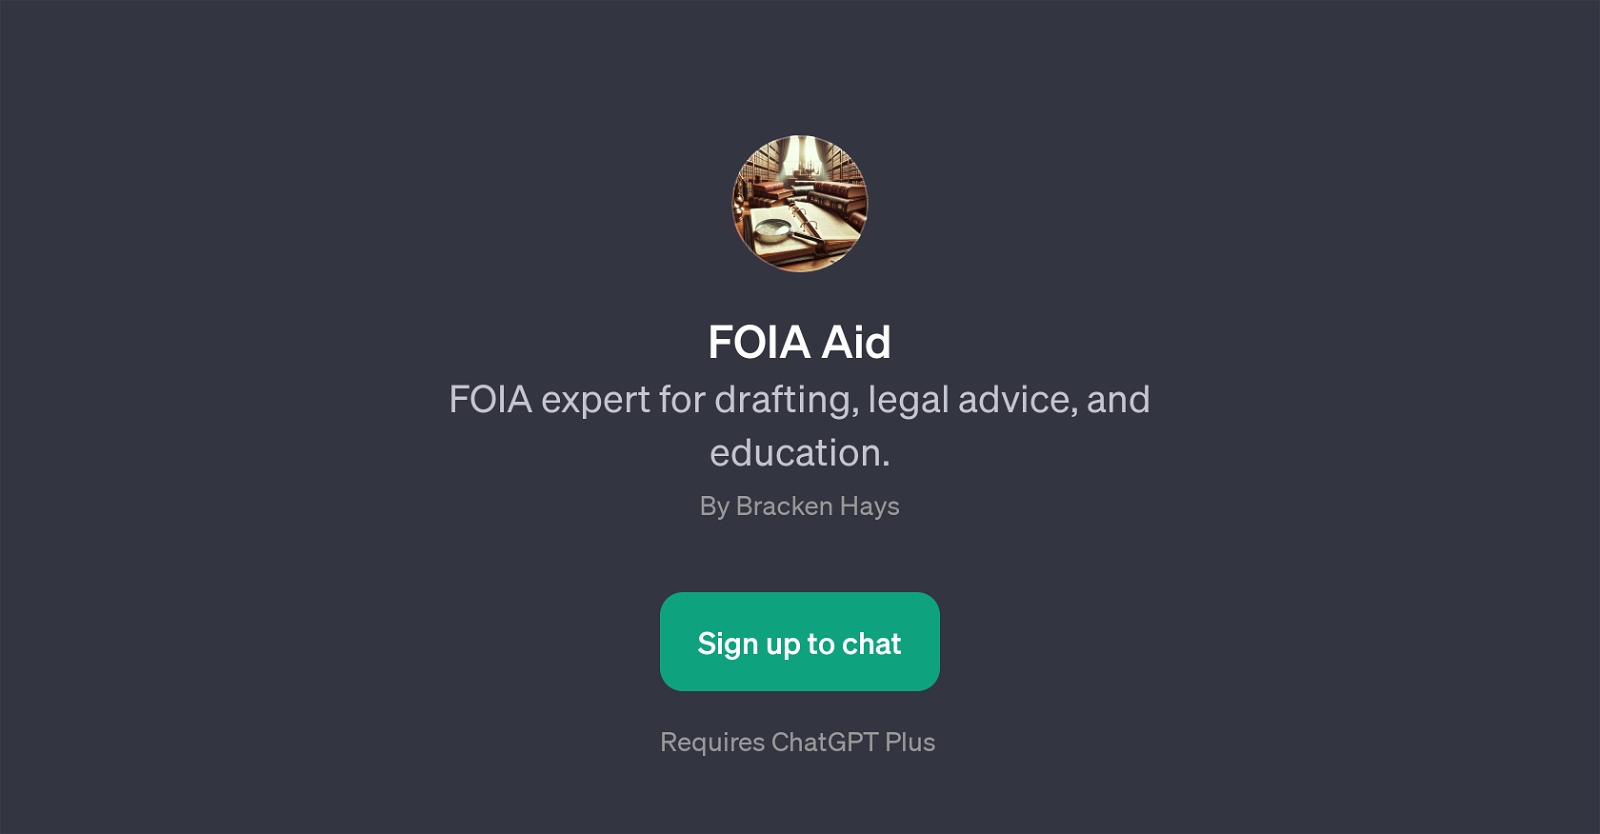 FOIA Aid website